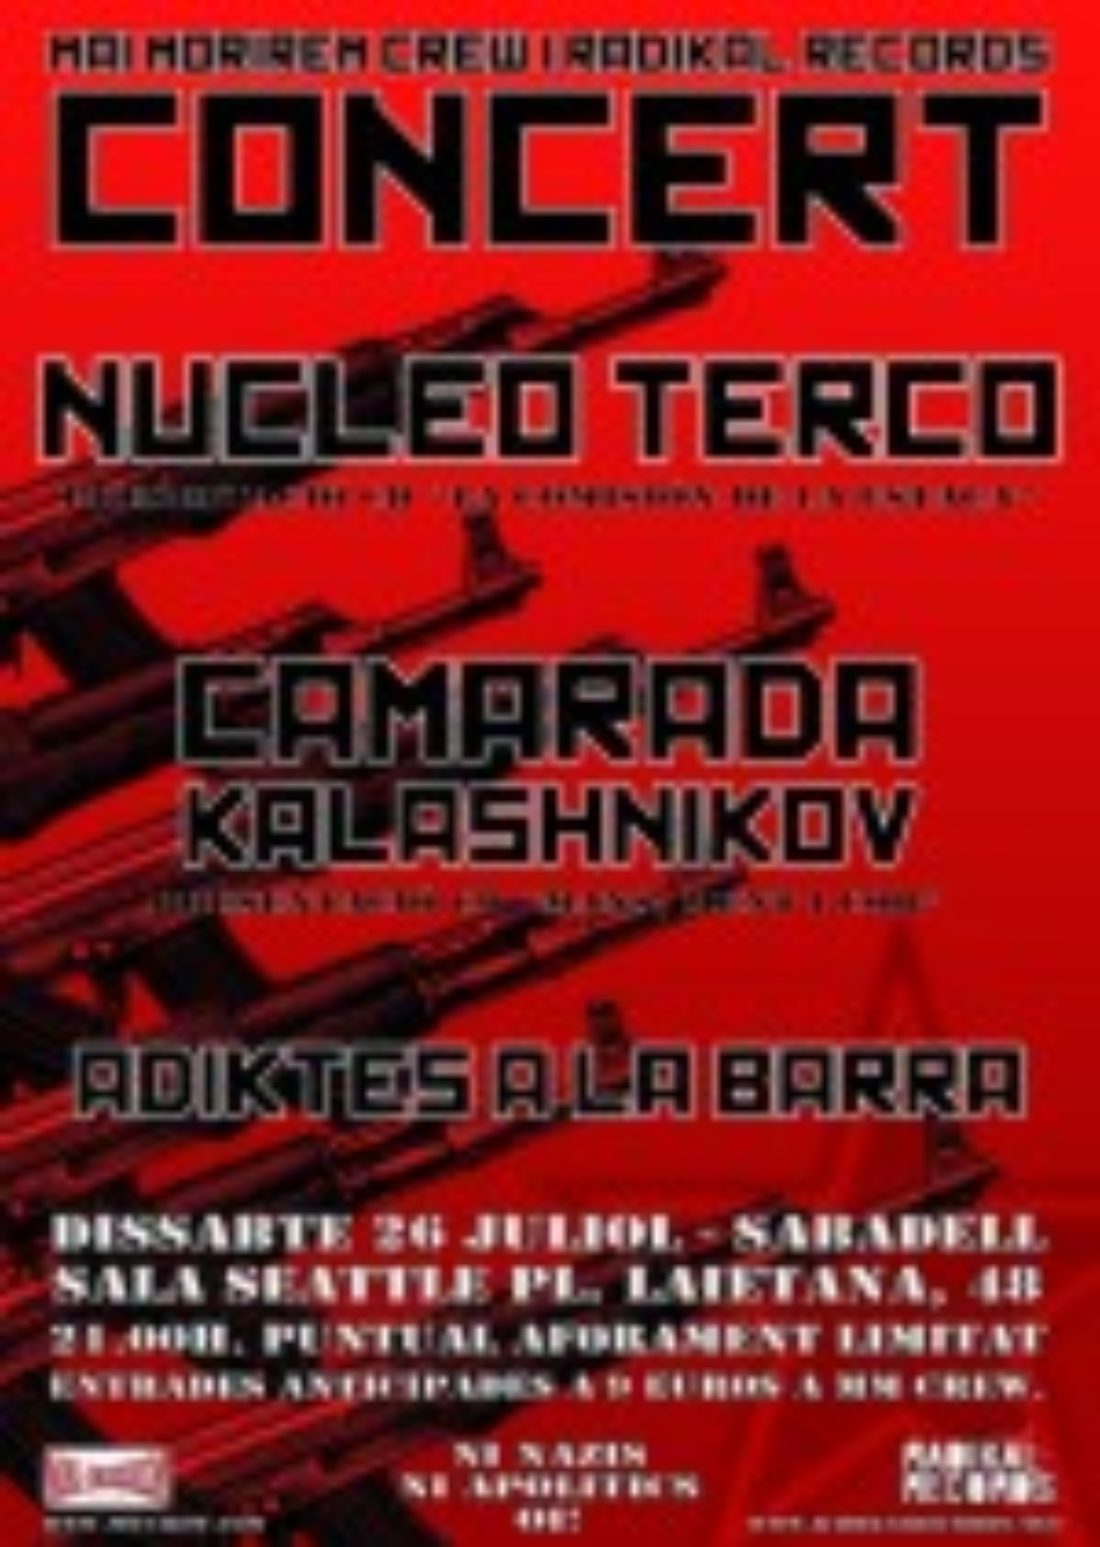 Concierto : NÚCLEO TERCO + CAMARADA KALASHNIKOV + ADIKTES A LA BARRA. Sábado 26 de abril. Sabadell – Catalunya